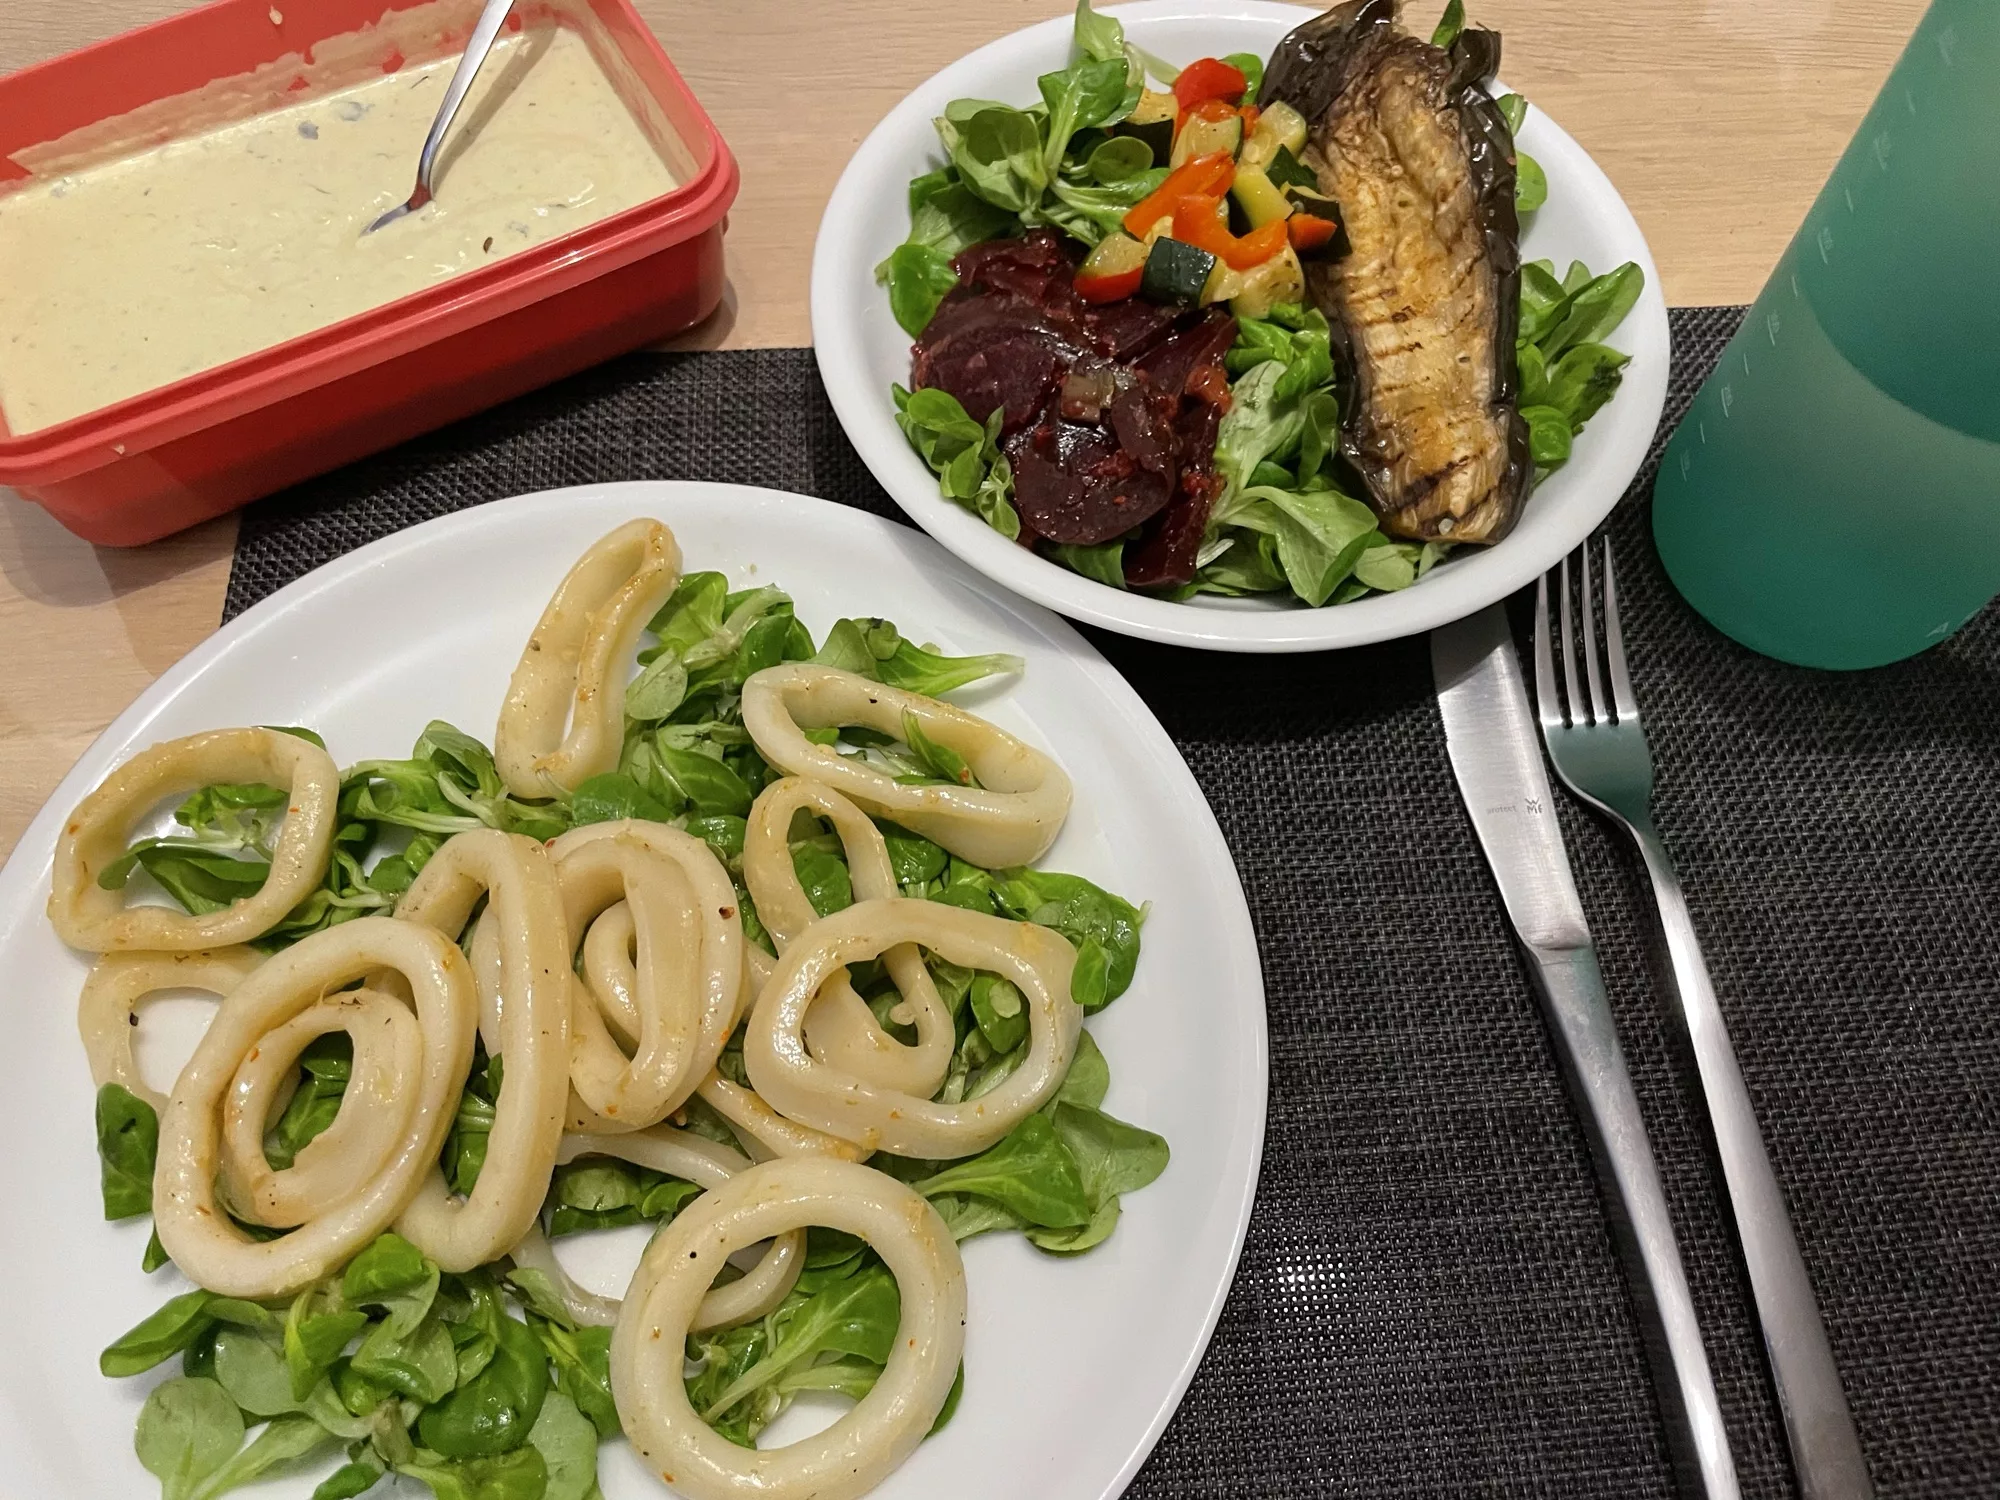 Tintenfischringe auf grünem Salat mit Aioli und einem kleinen gemischten Salat.